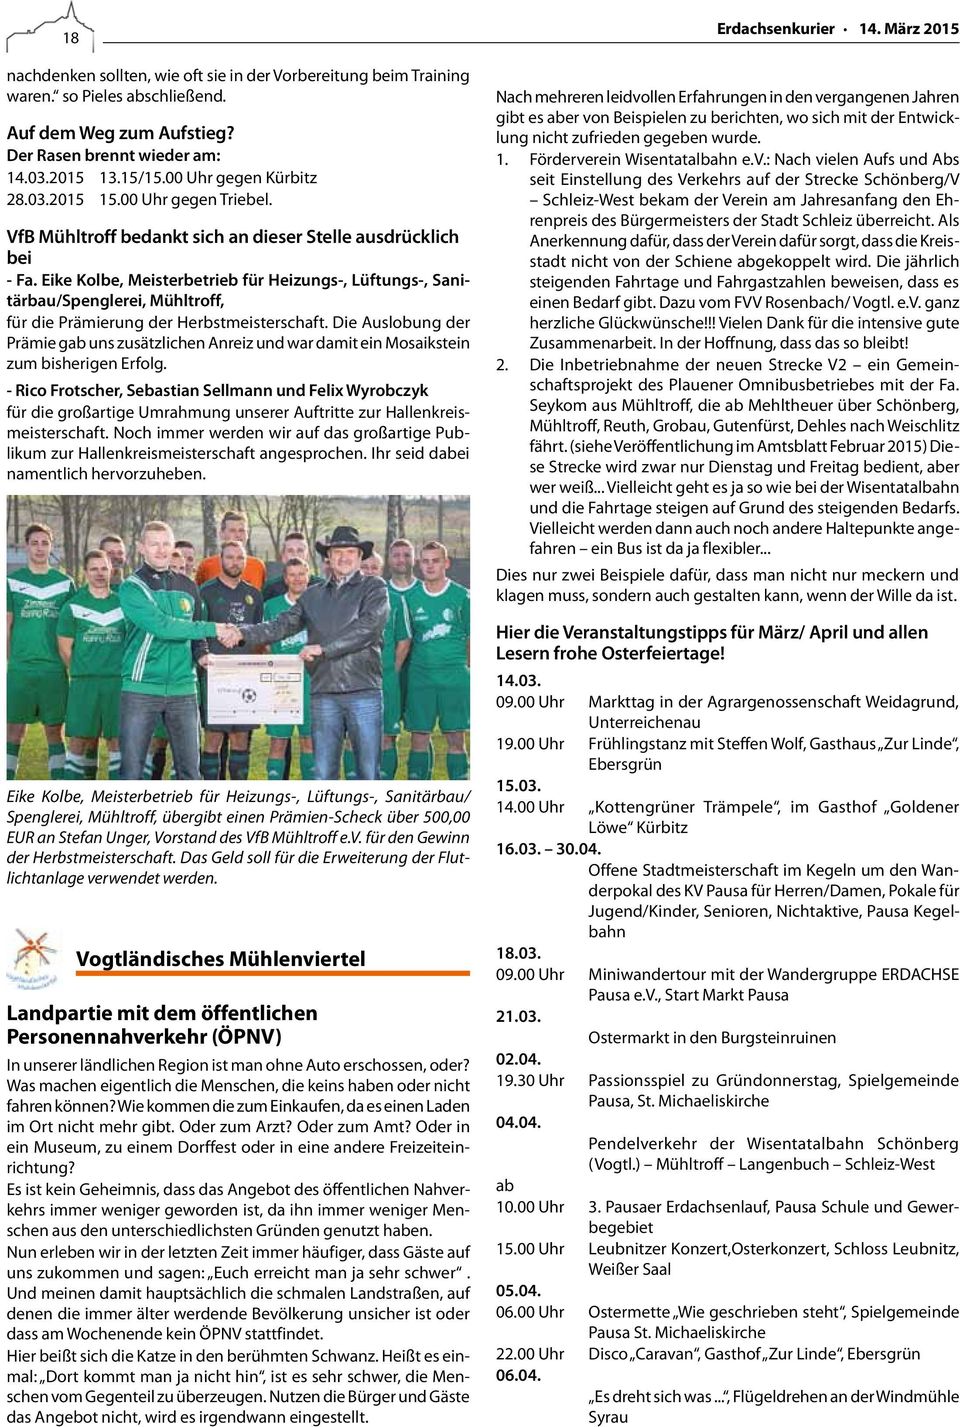 Eike Kolbe, Meisterbetrieb für Heizungs-, Lüftungs-, Sanitärbau/Spenglerei, Mühltroff, für die Prämierung der Herbstmeisterschaft.